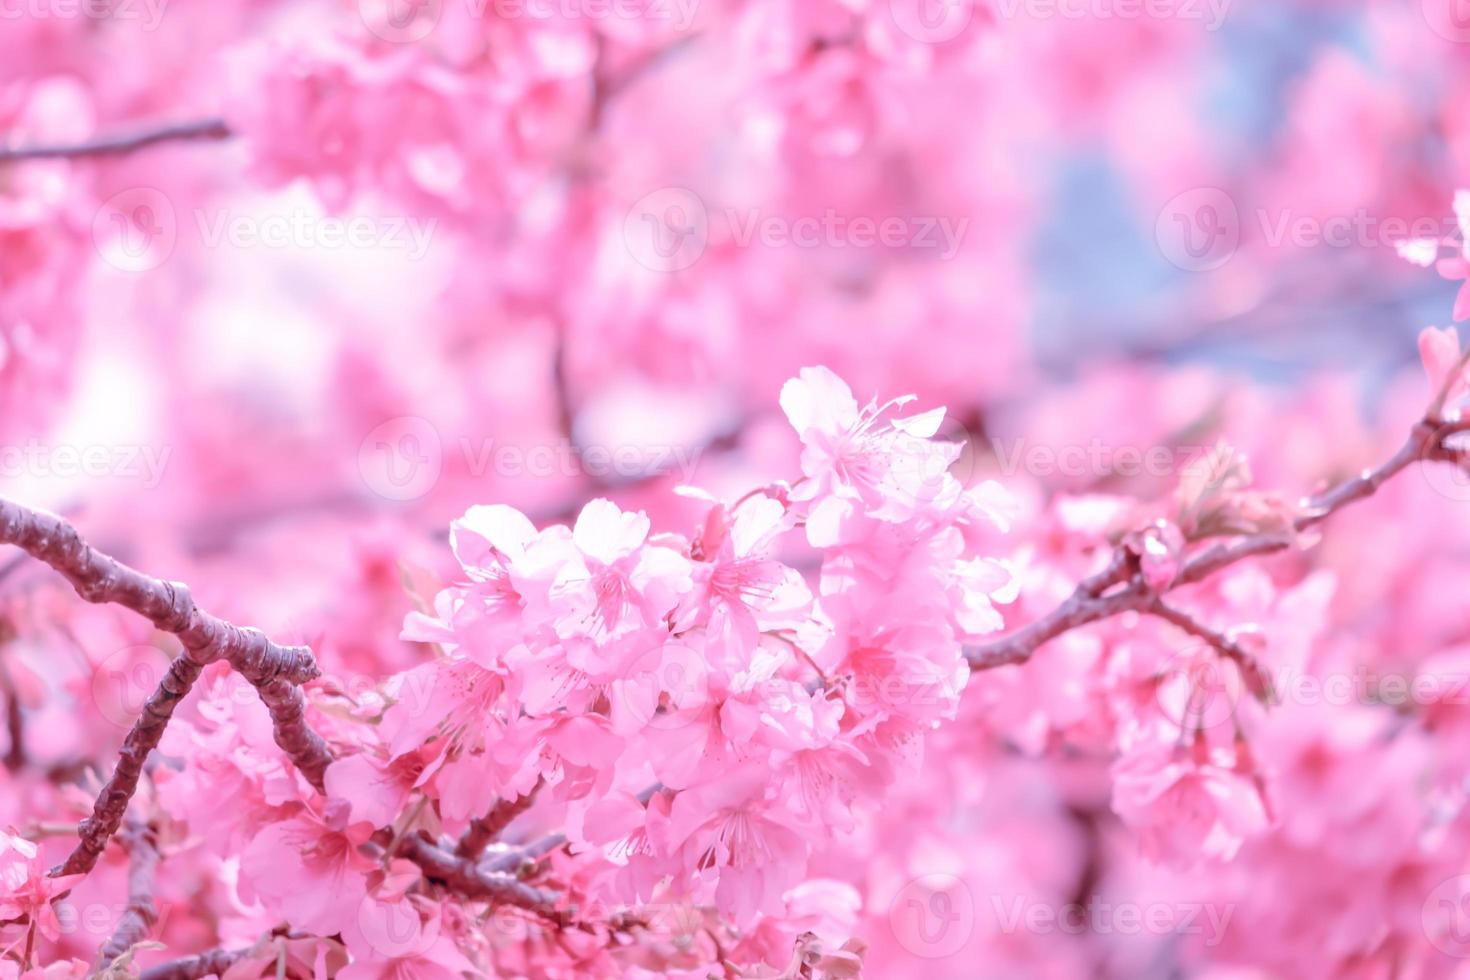 foco suave lindas flores de cerejeira rosa sakura com refrescante pela manhã no japão foto